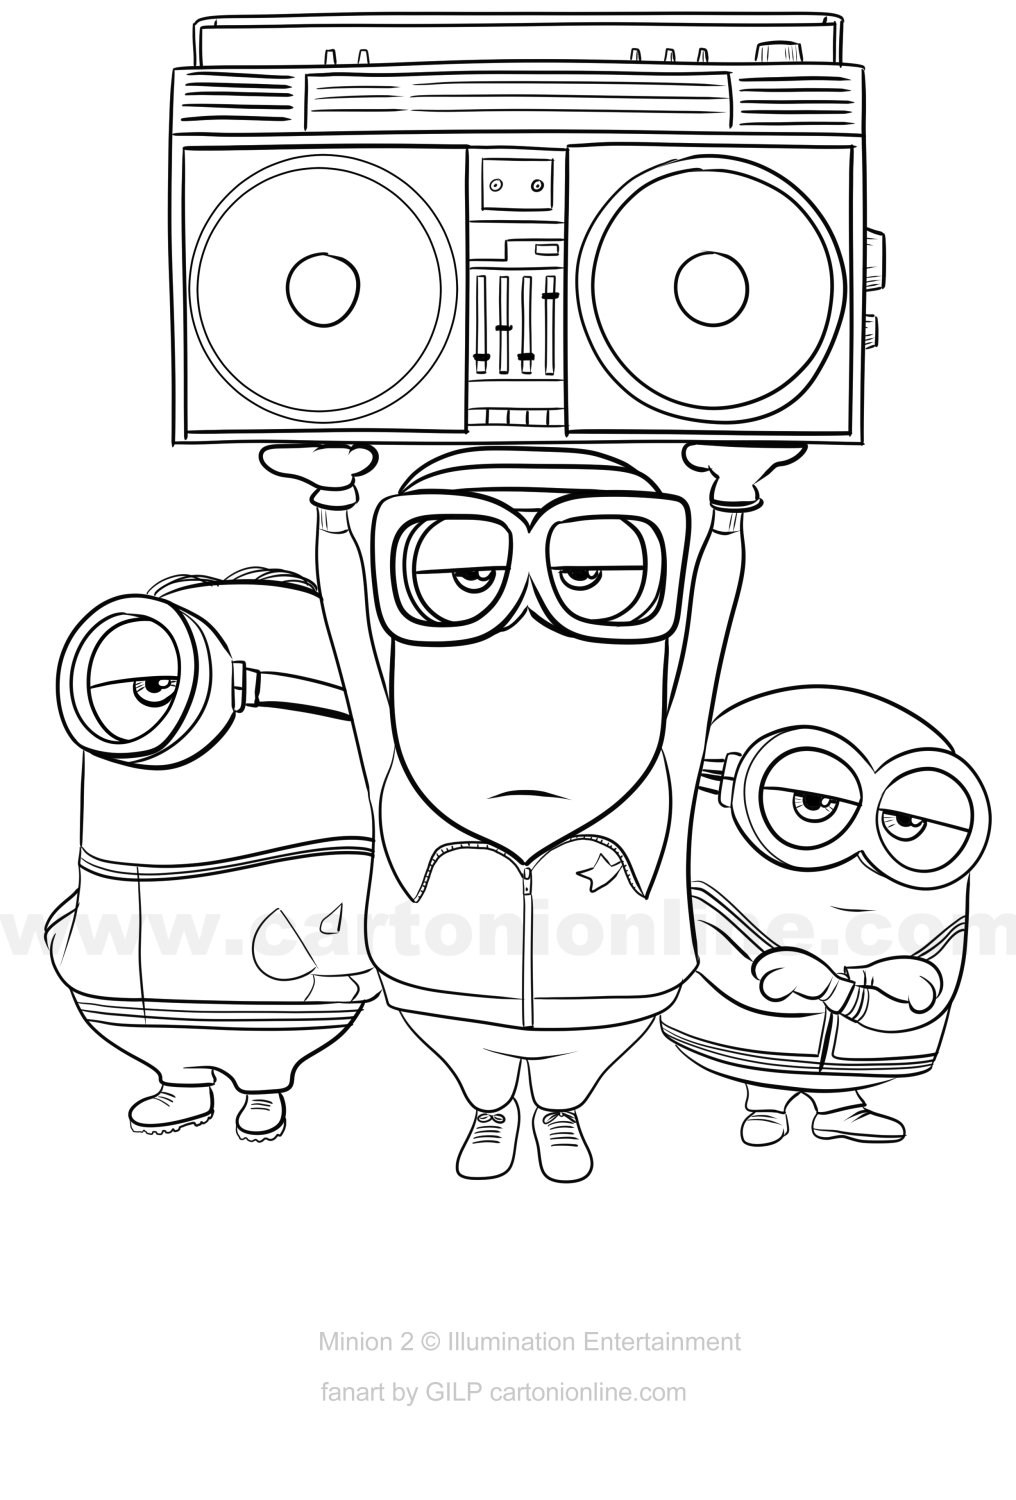 Rita Bob, Stuart, Kevin från Minions 2 - Hur Gru blir väldigt dålig på att skriva ut och färglägga